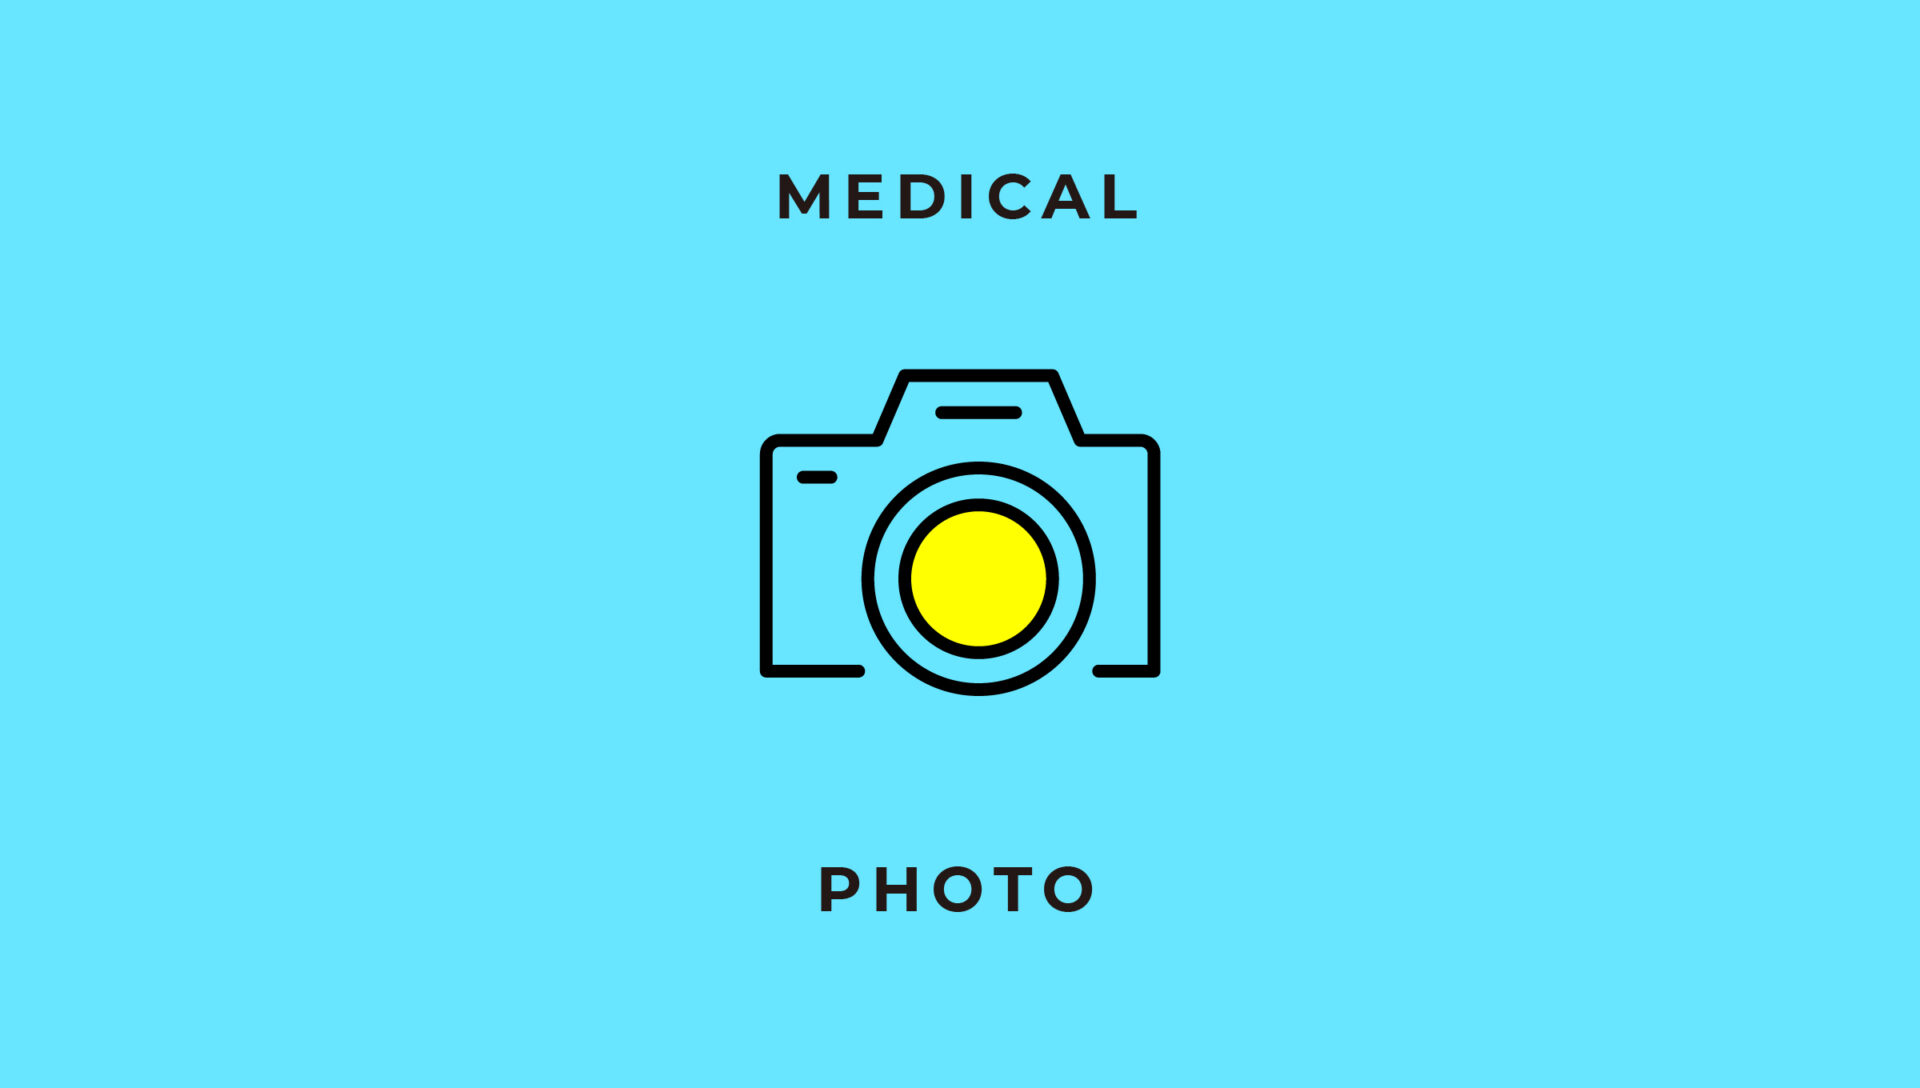 医療機関ホームページの写真撮影時の注意点